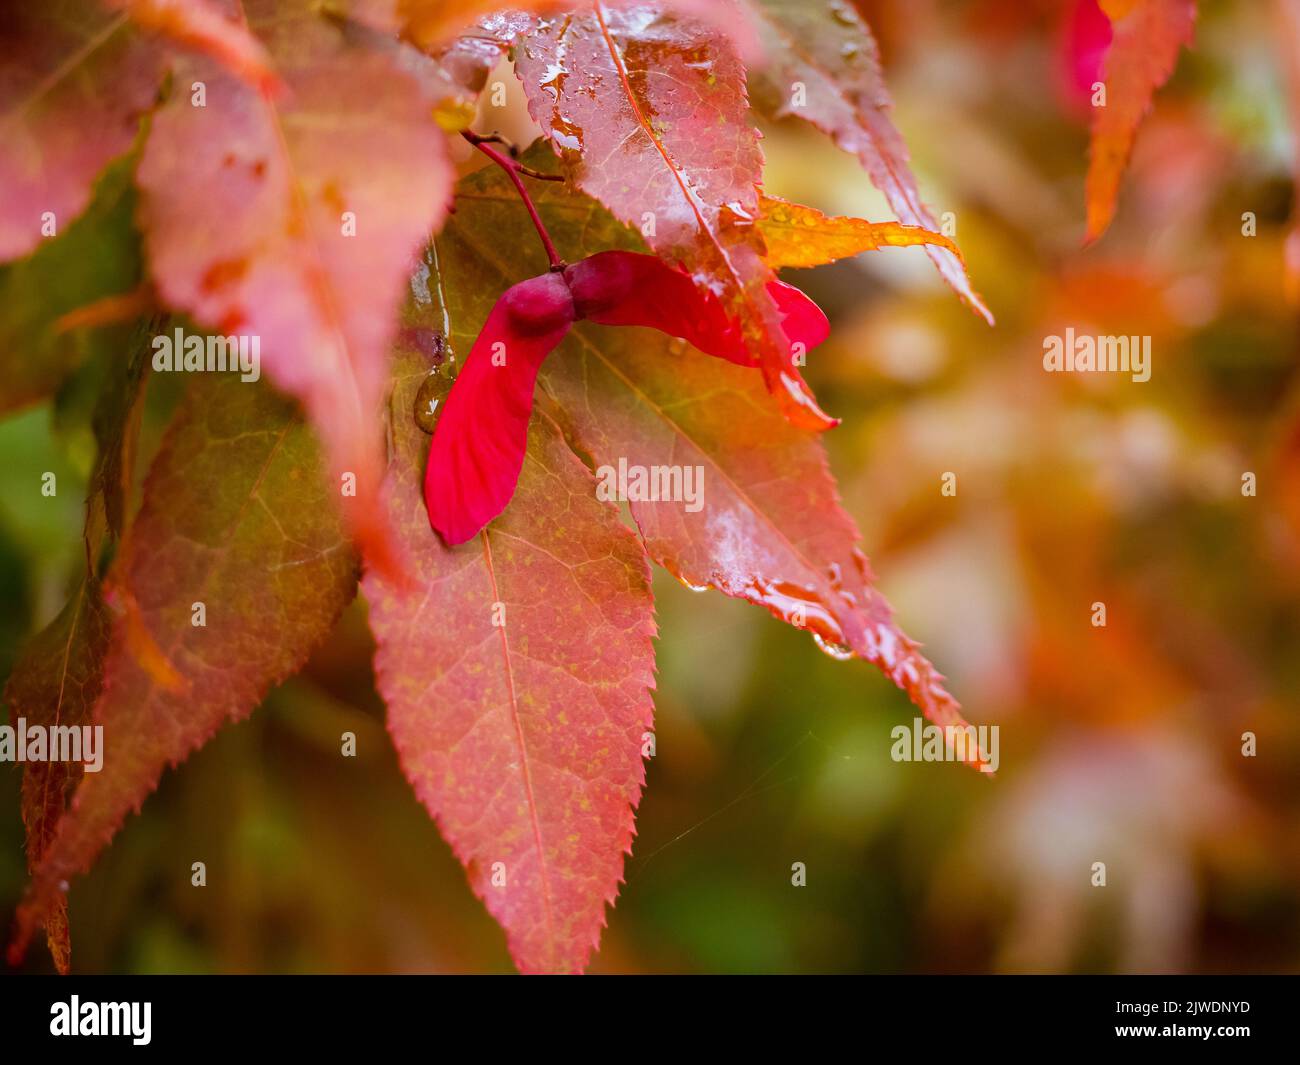 Rote Ahornbäume Blätter, Nahaufnahme Foto von schönen roten Herbstlaub. Natürliche lebendige Herbstsaison Farben Stockfoto